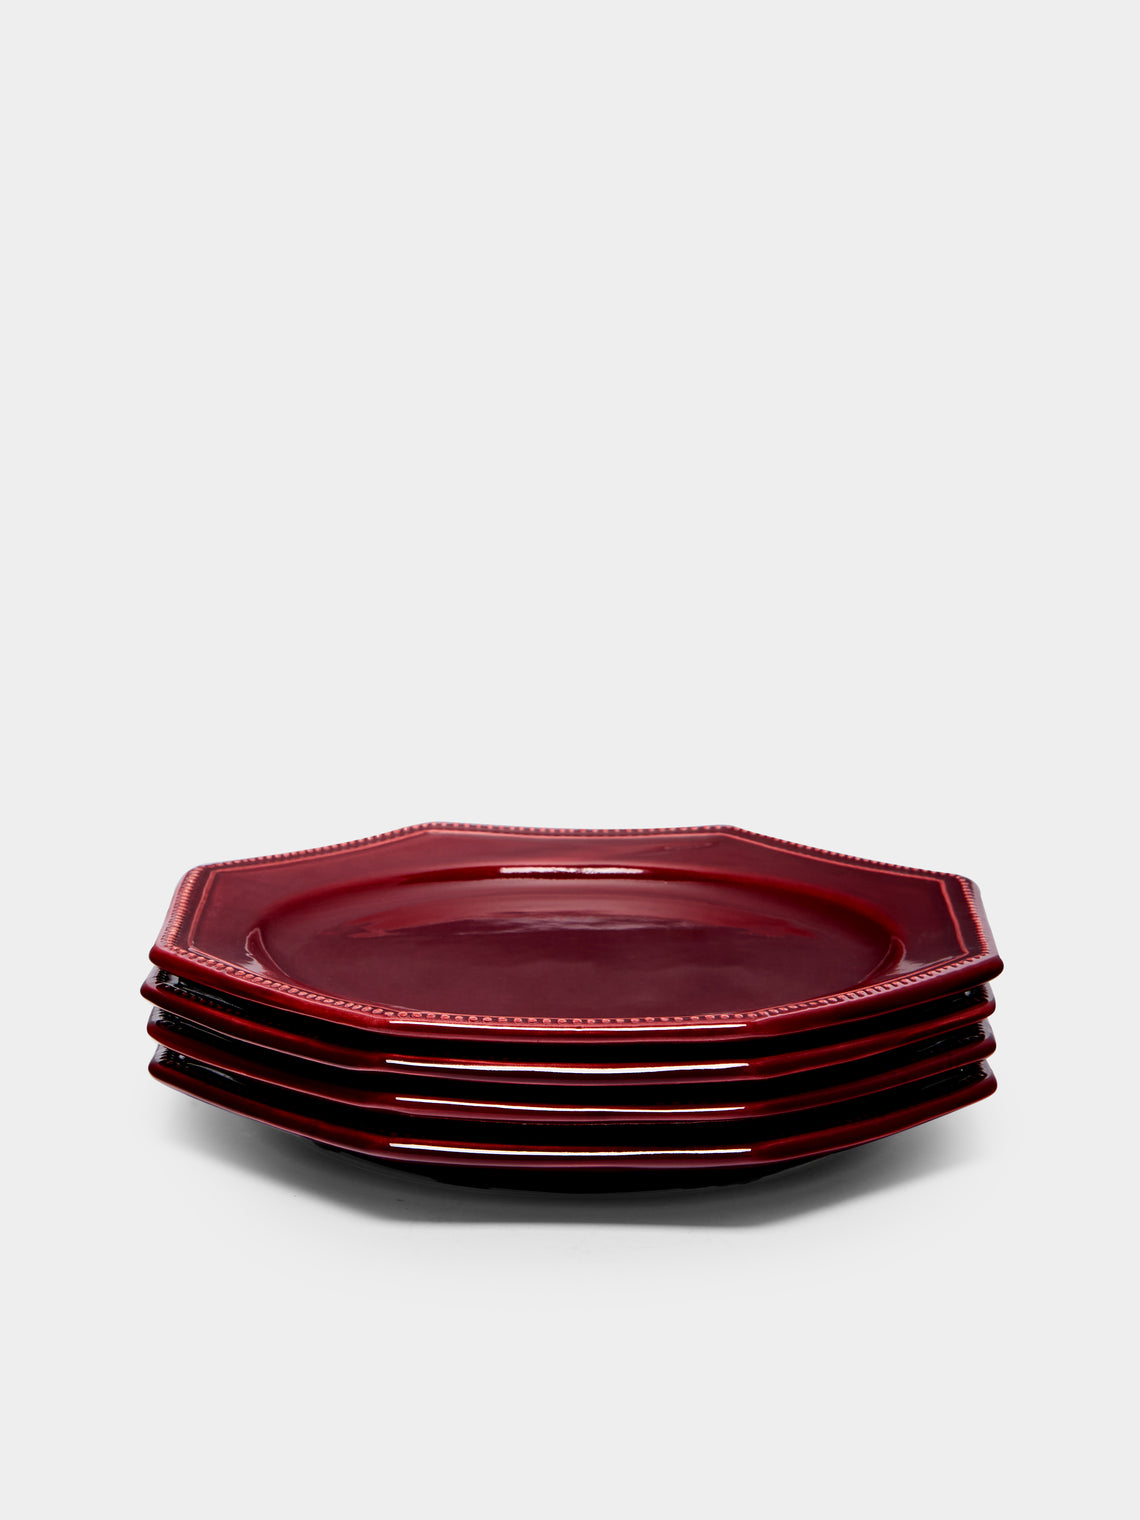 Maison Pichon Uzès - Louis XVI Hand-Glazed Ceramic Dinner Plates (Set of 4) -  - ABASK